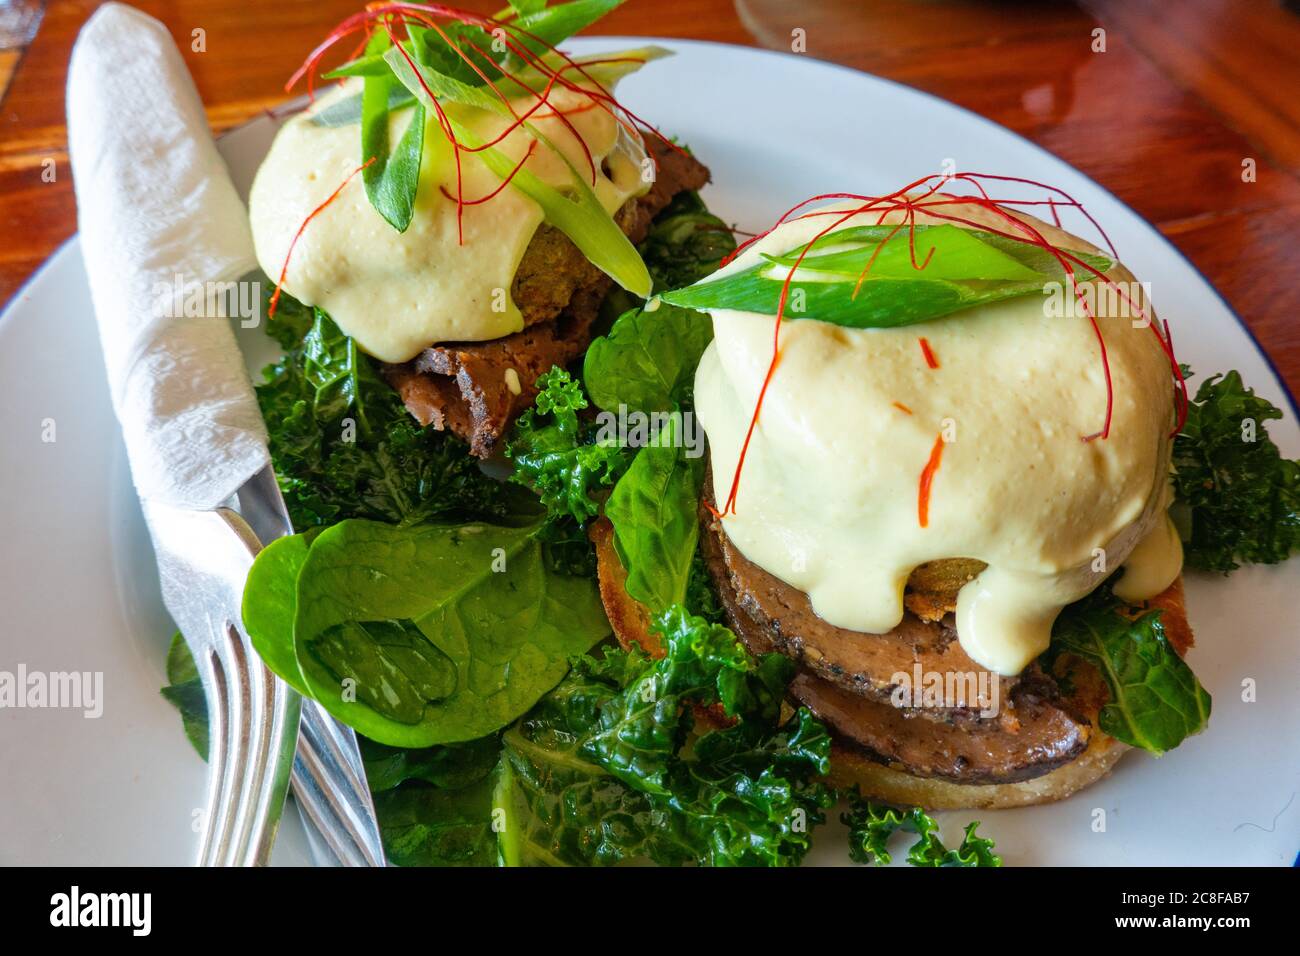 Ein veganes benedict-Frühstück: In einem Restaurant mit Pflanzenbasis werden Fleisch, Haschebraun und Sauce Hollandaise auf Grünkohl und einem englischen Muffin serviert Stockfoto